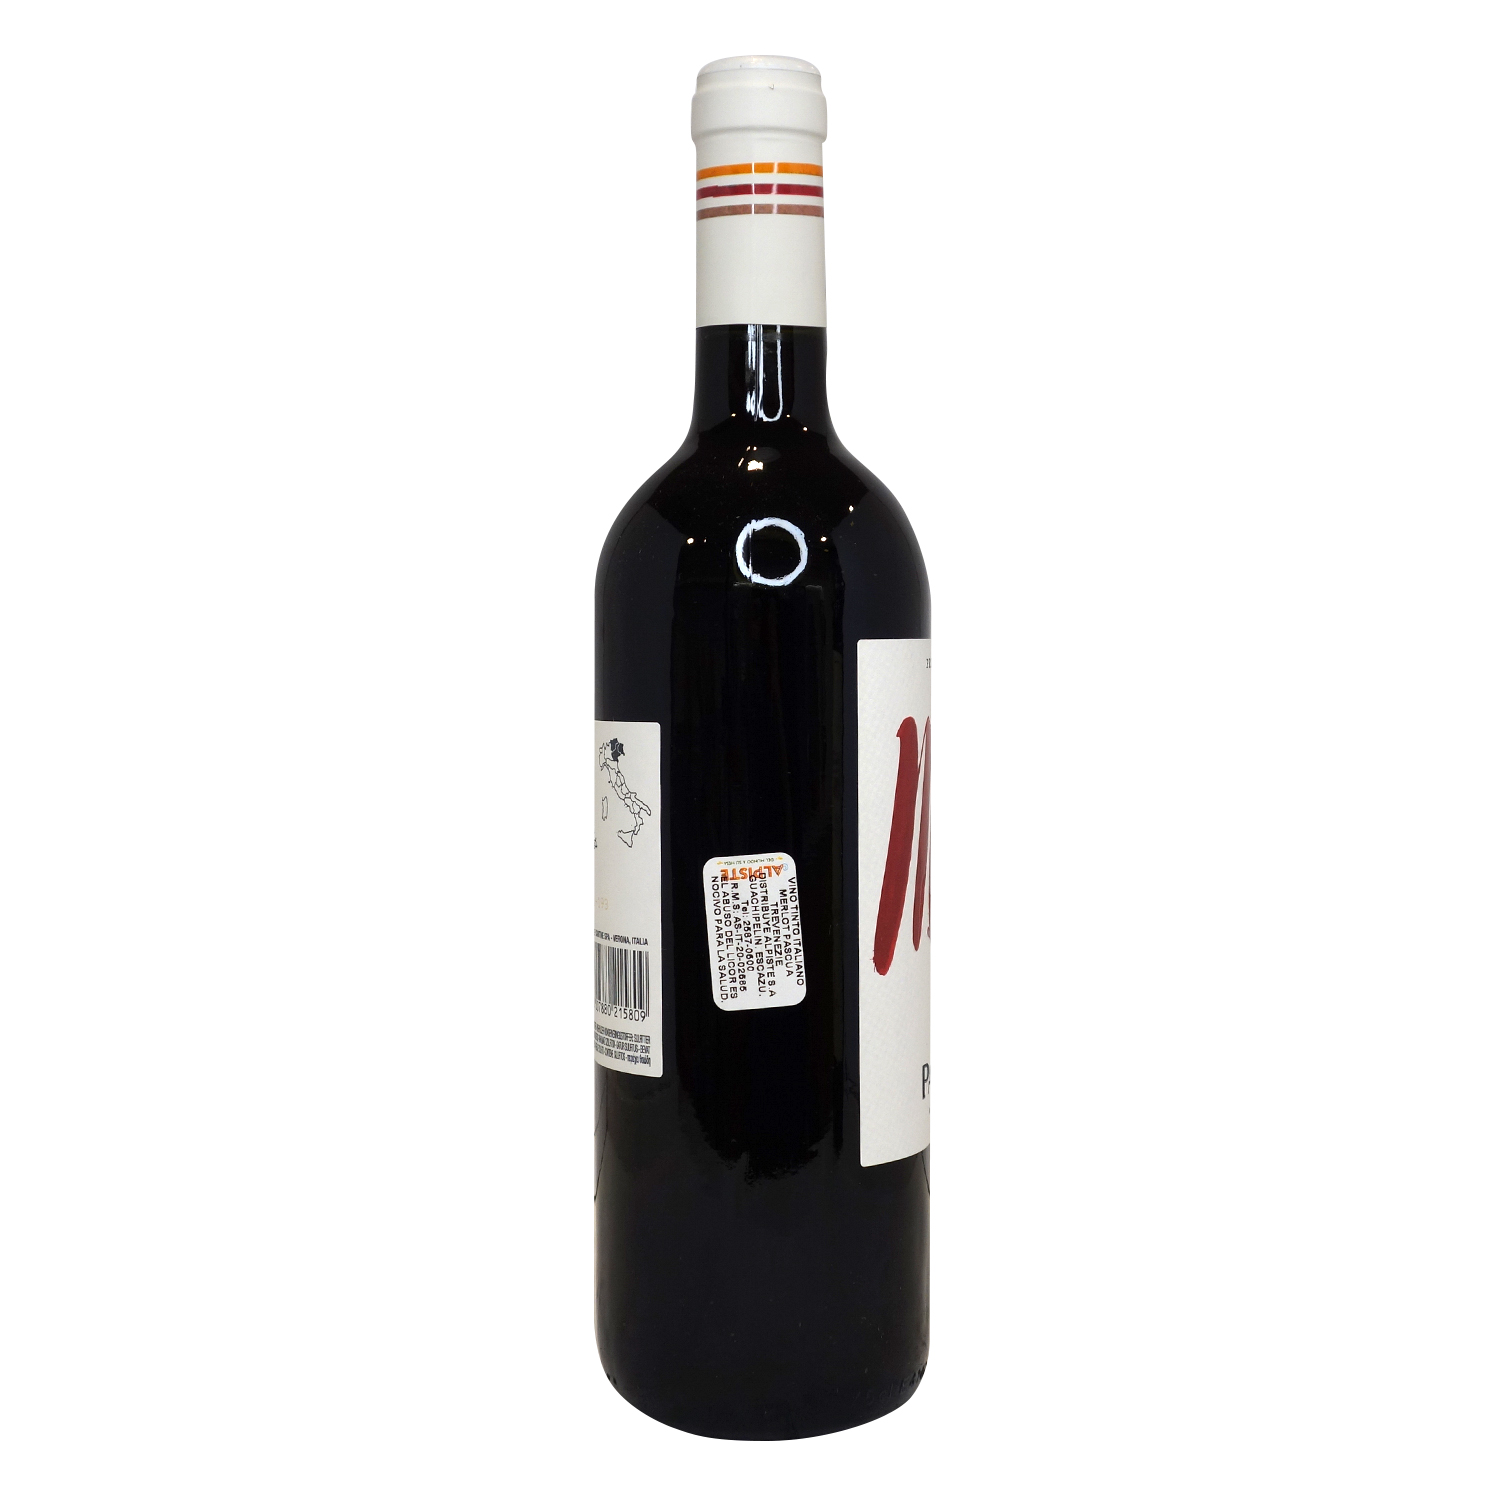 Vino Tinto Italia Merlot Pasqua Botella 750 Ml